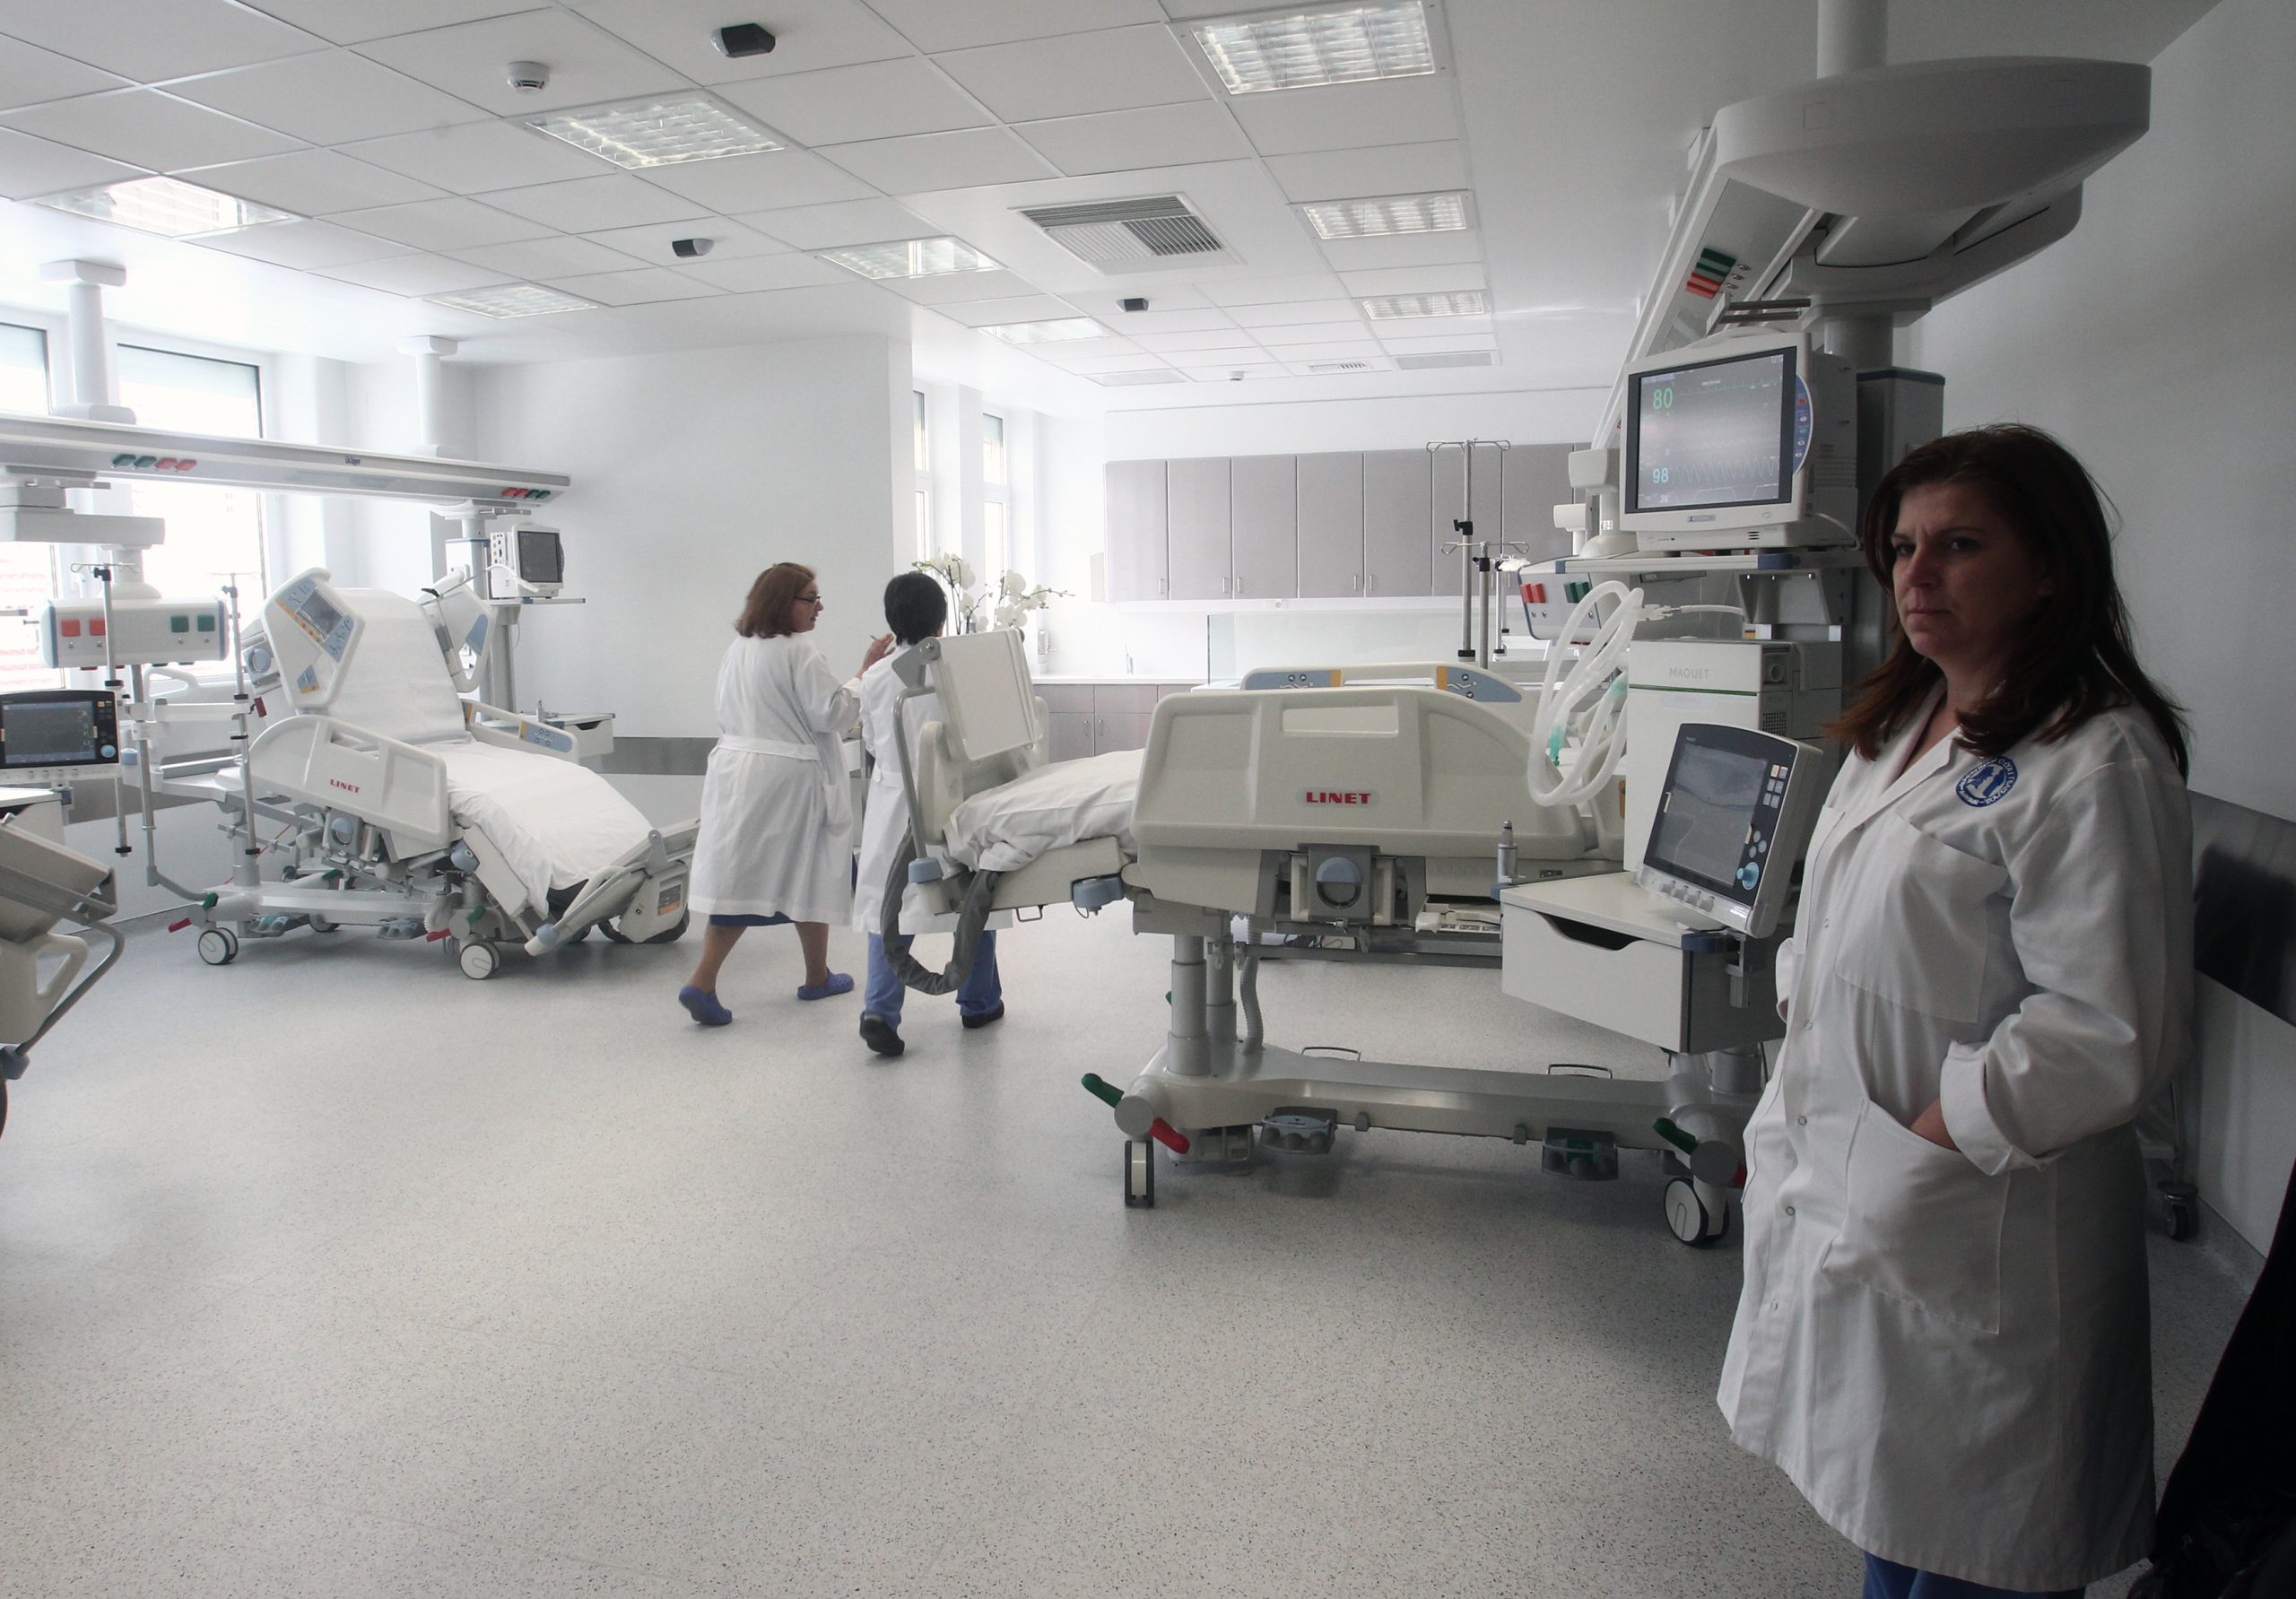 Πρόβλημα έλλειψης αίματος στο Πανεπιστημιακό Νοσοκομείο Ιωαννίνων για προγραμματισμένες μεταγγίσεις